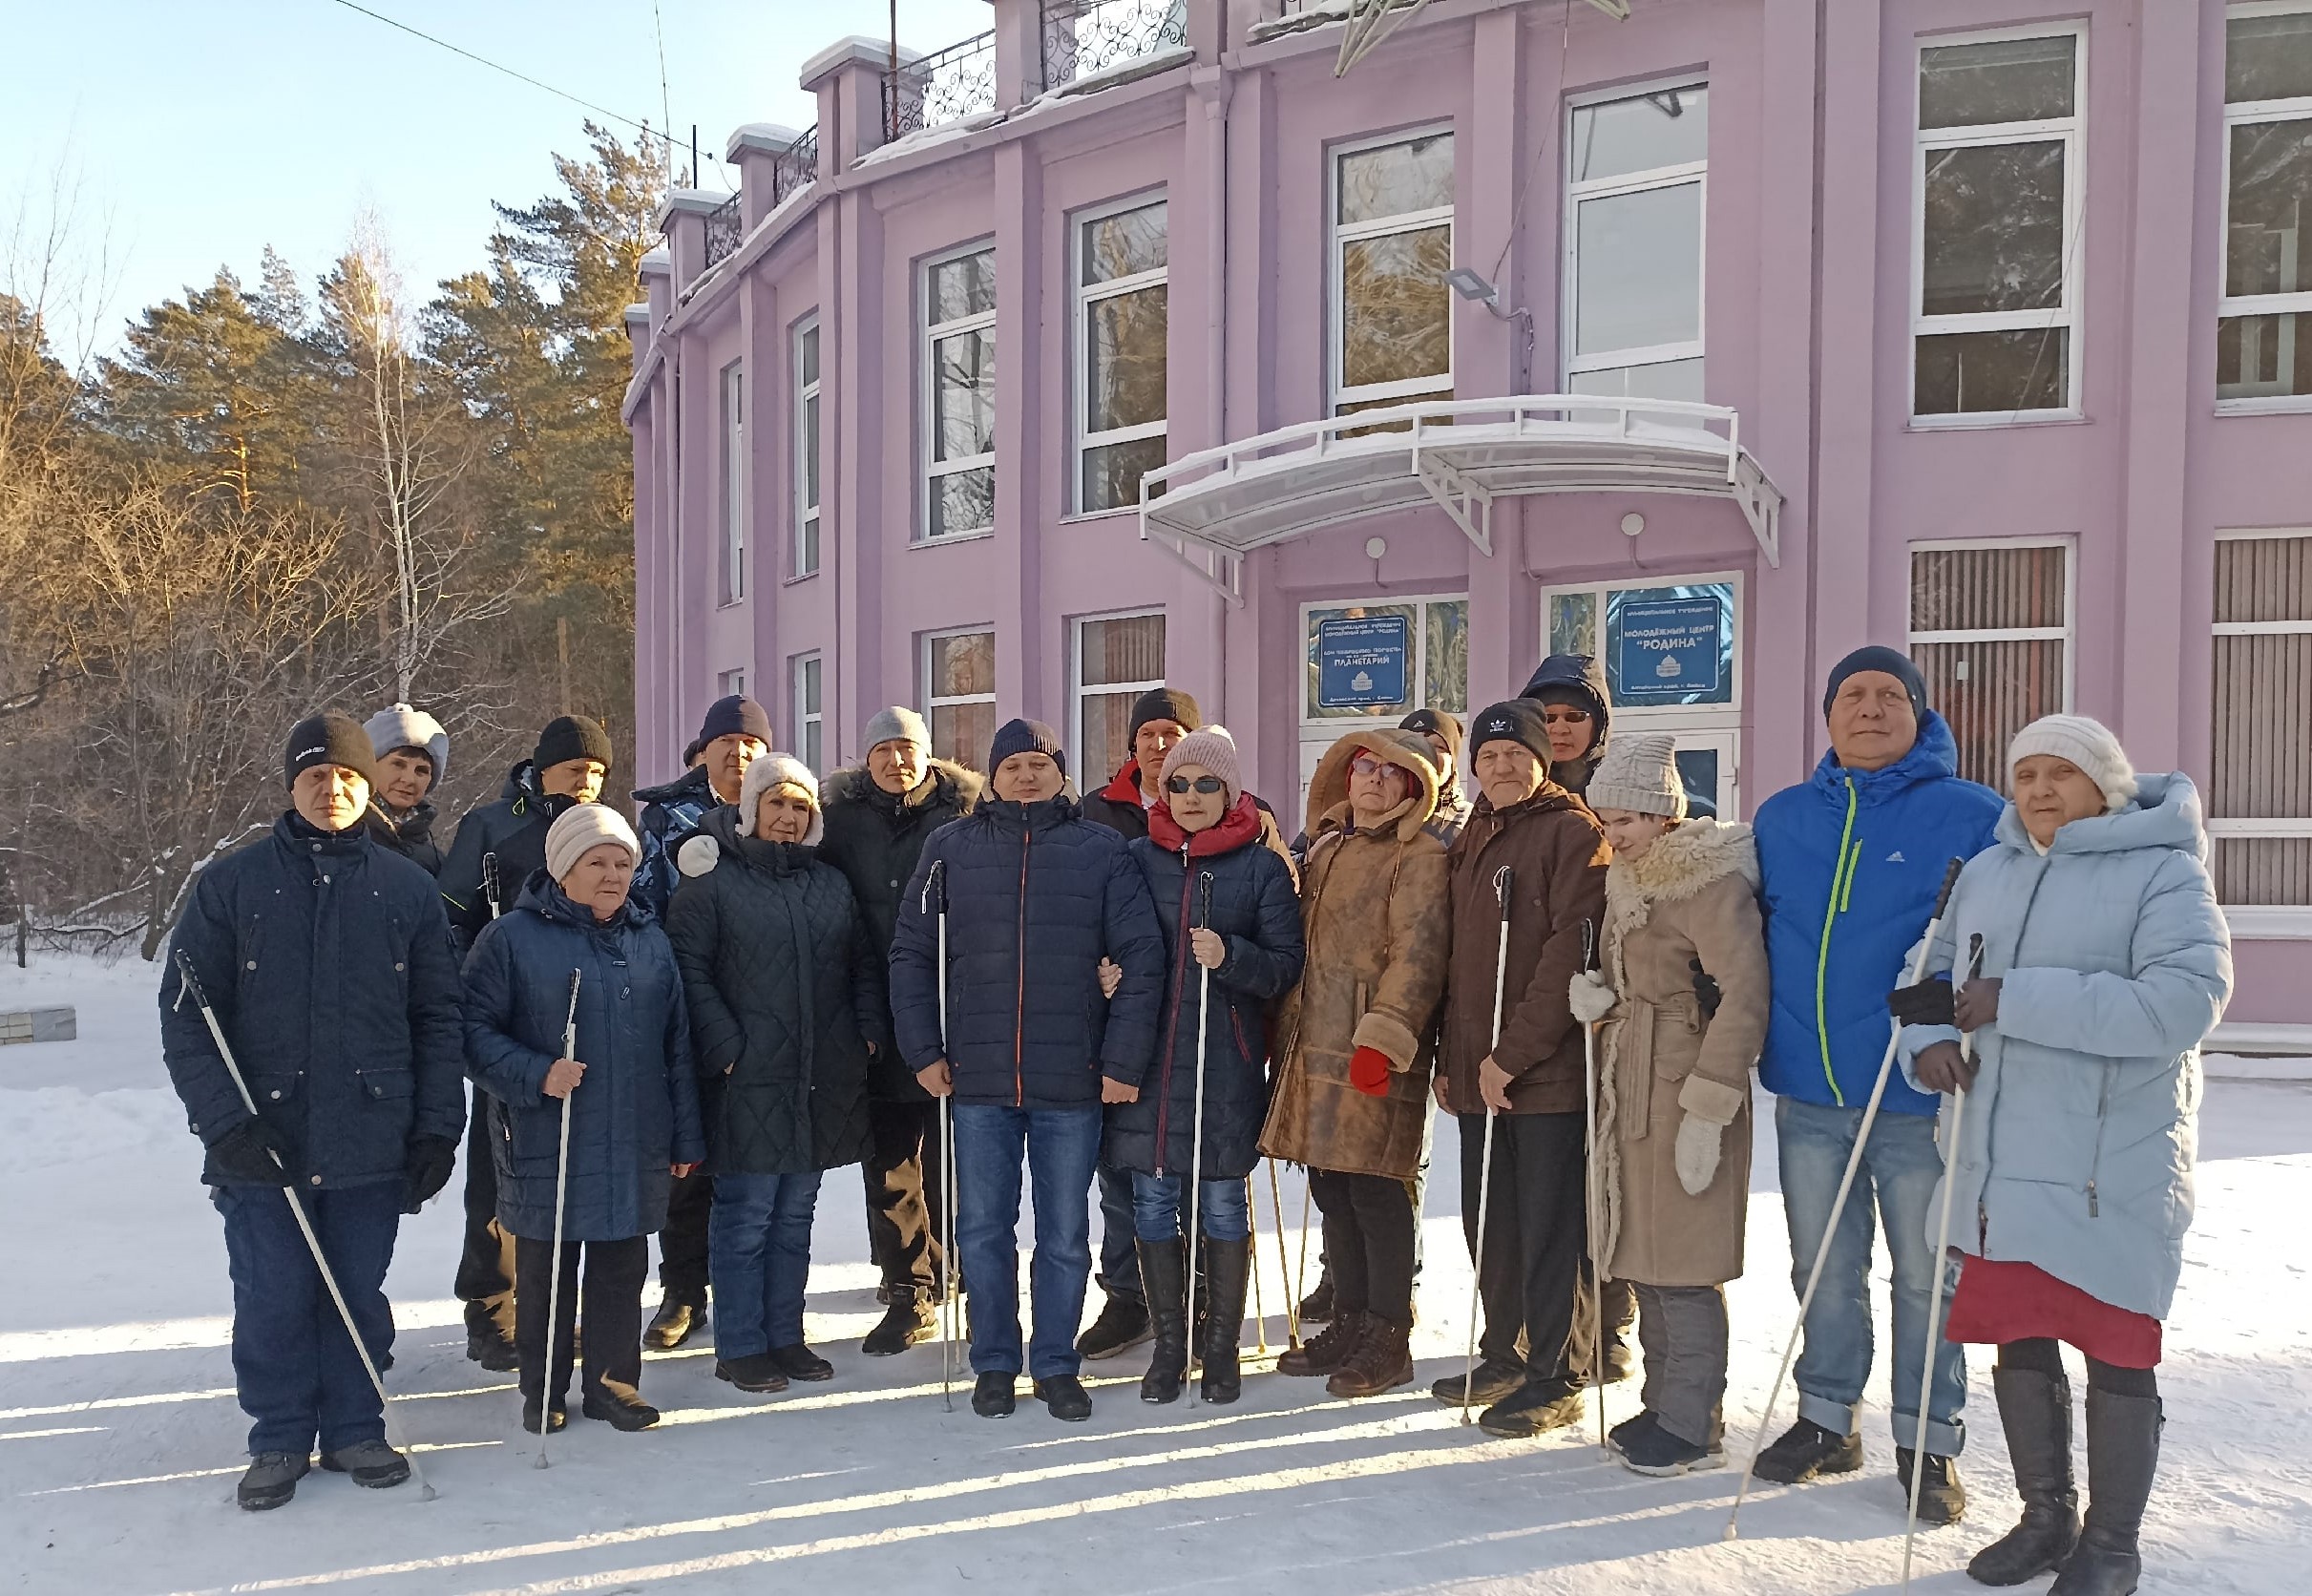 Тифлокомментарий к картинке: групповая фотография участников экскурсии в Бийский планетарий. Морозный зимний день, тепло одетые обучающиеся Бийского филиала ЦРС ВОС стоят на фоне розового здания Бийского планетария.